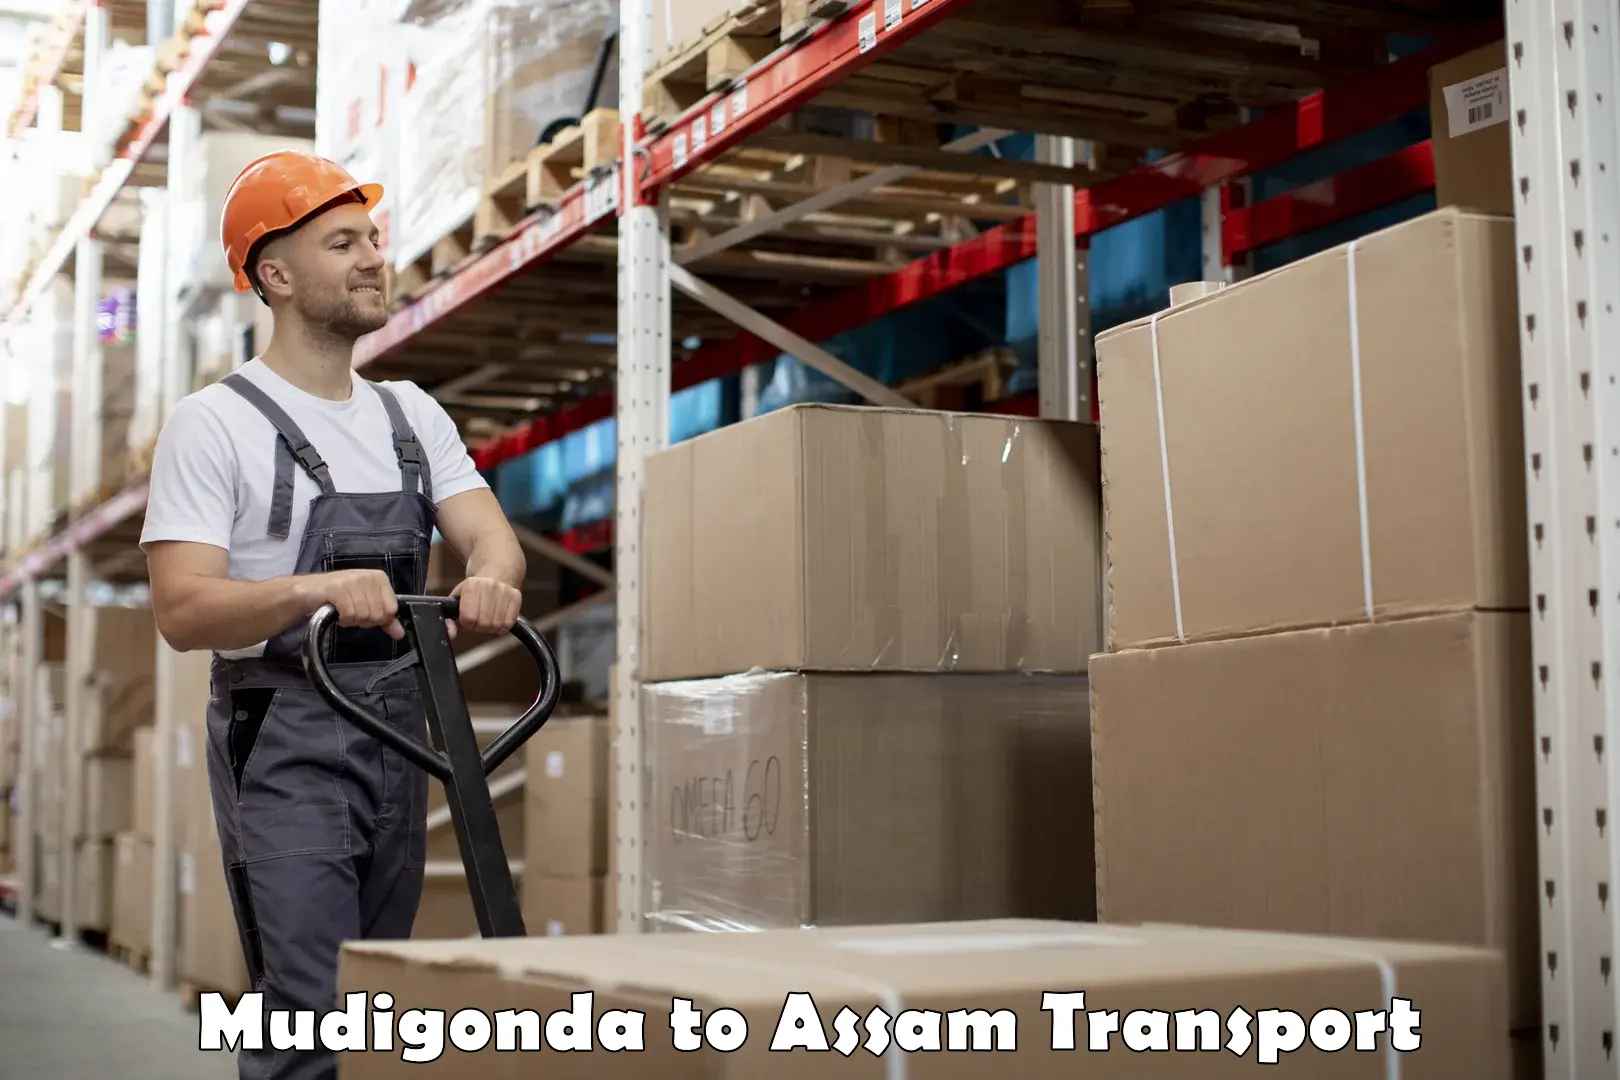 Transport in sharing Mudigonda to Chariduar